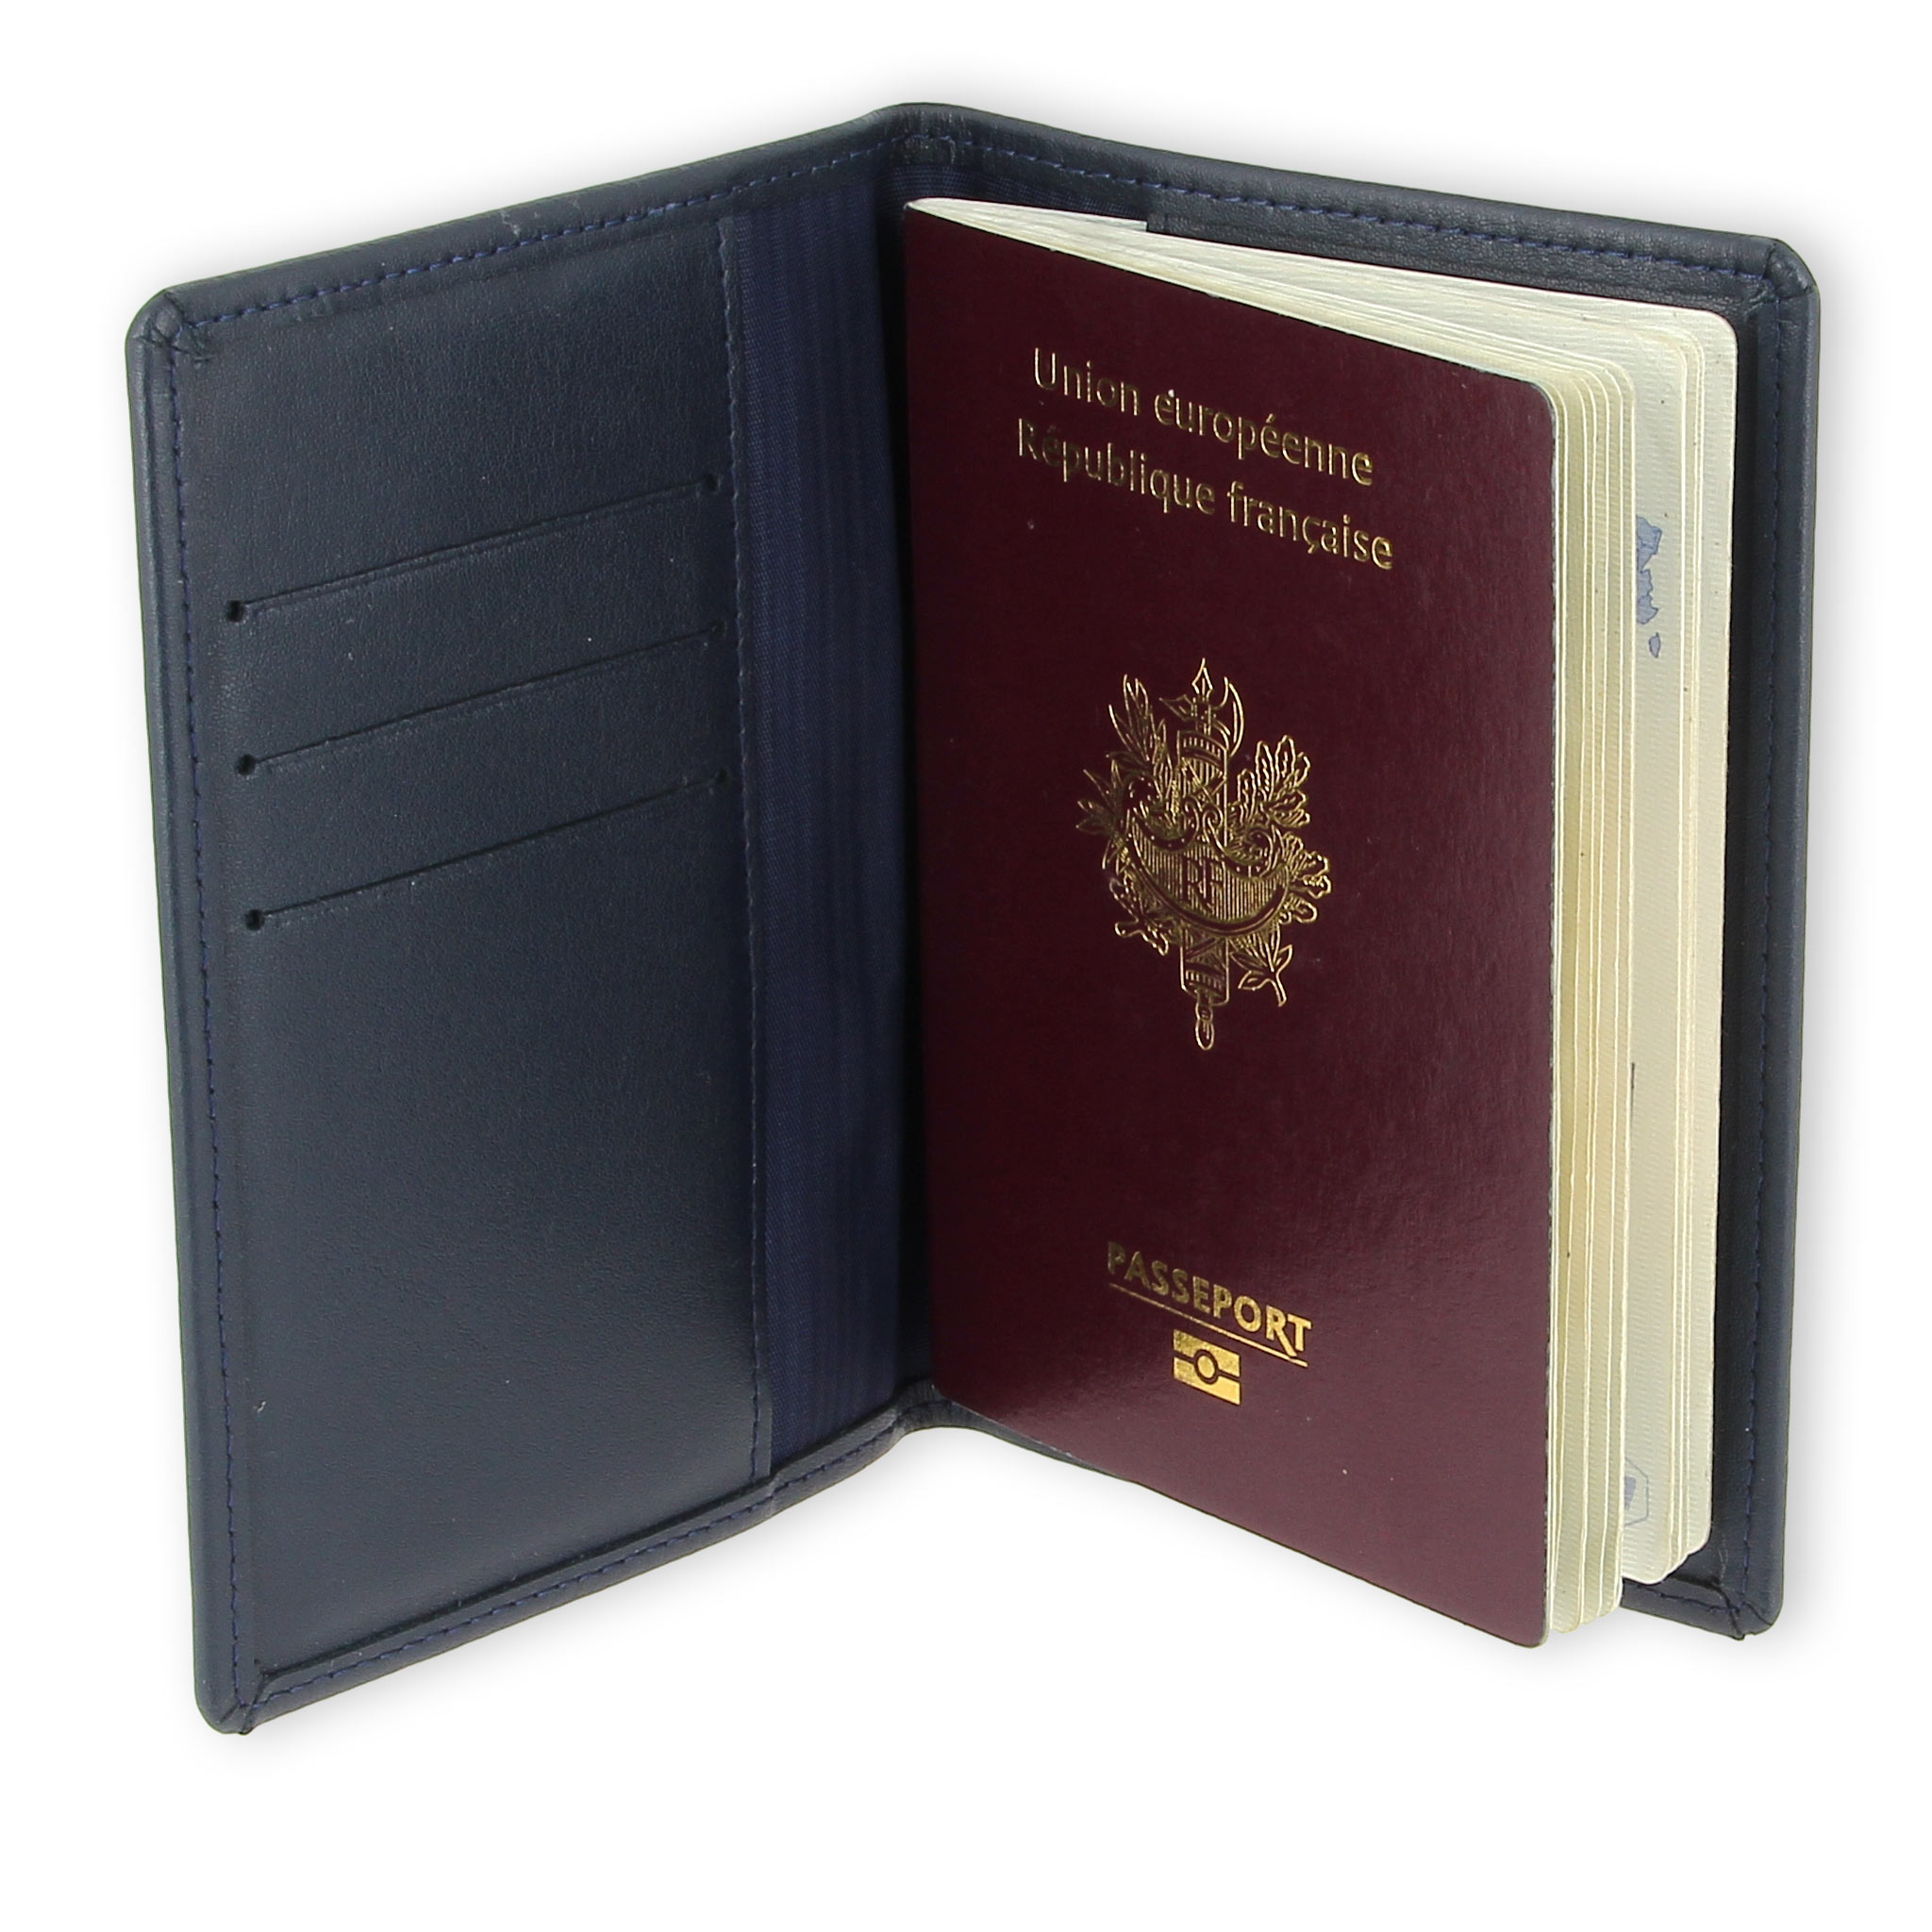 Hava Organiseur sécurisé RFID de passeport et documents de voyage 